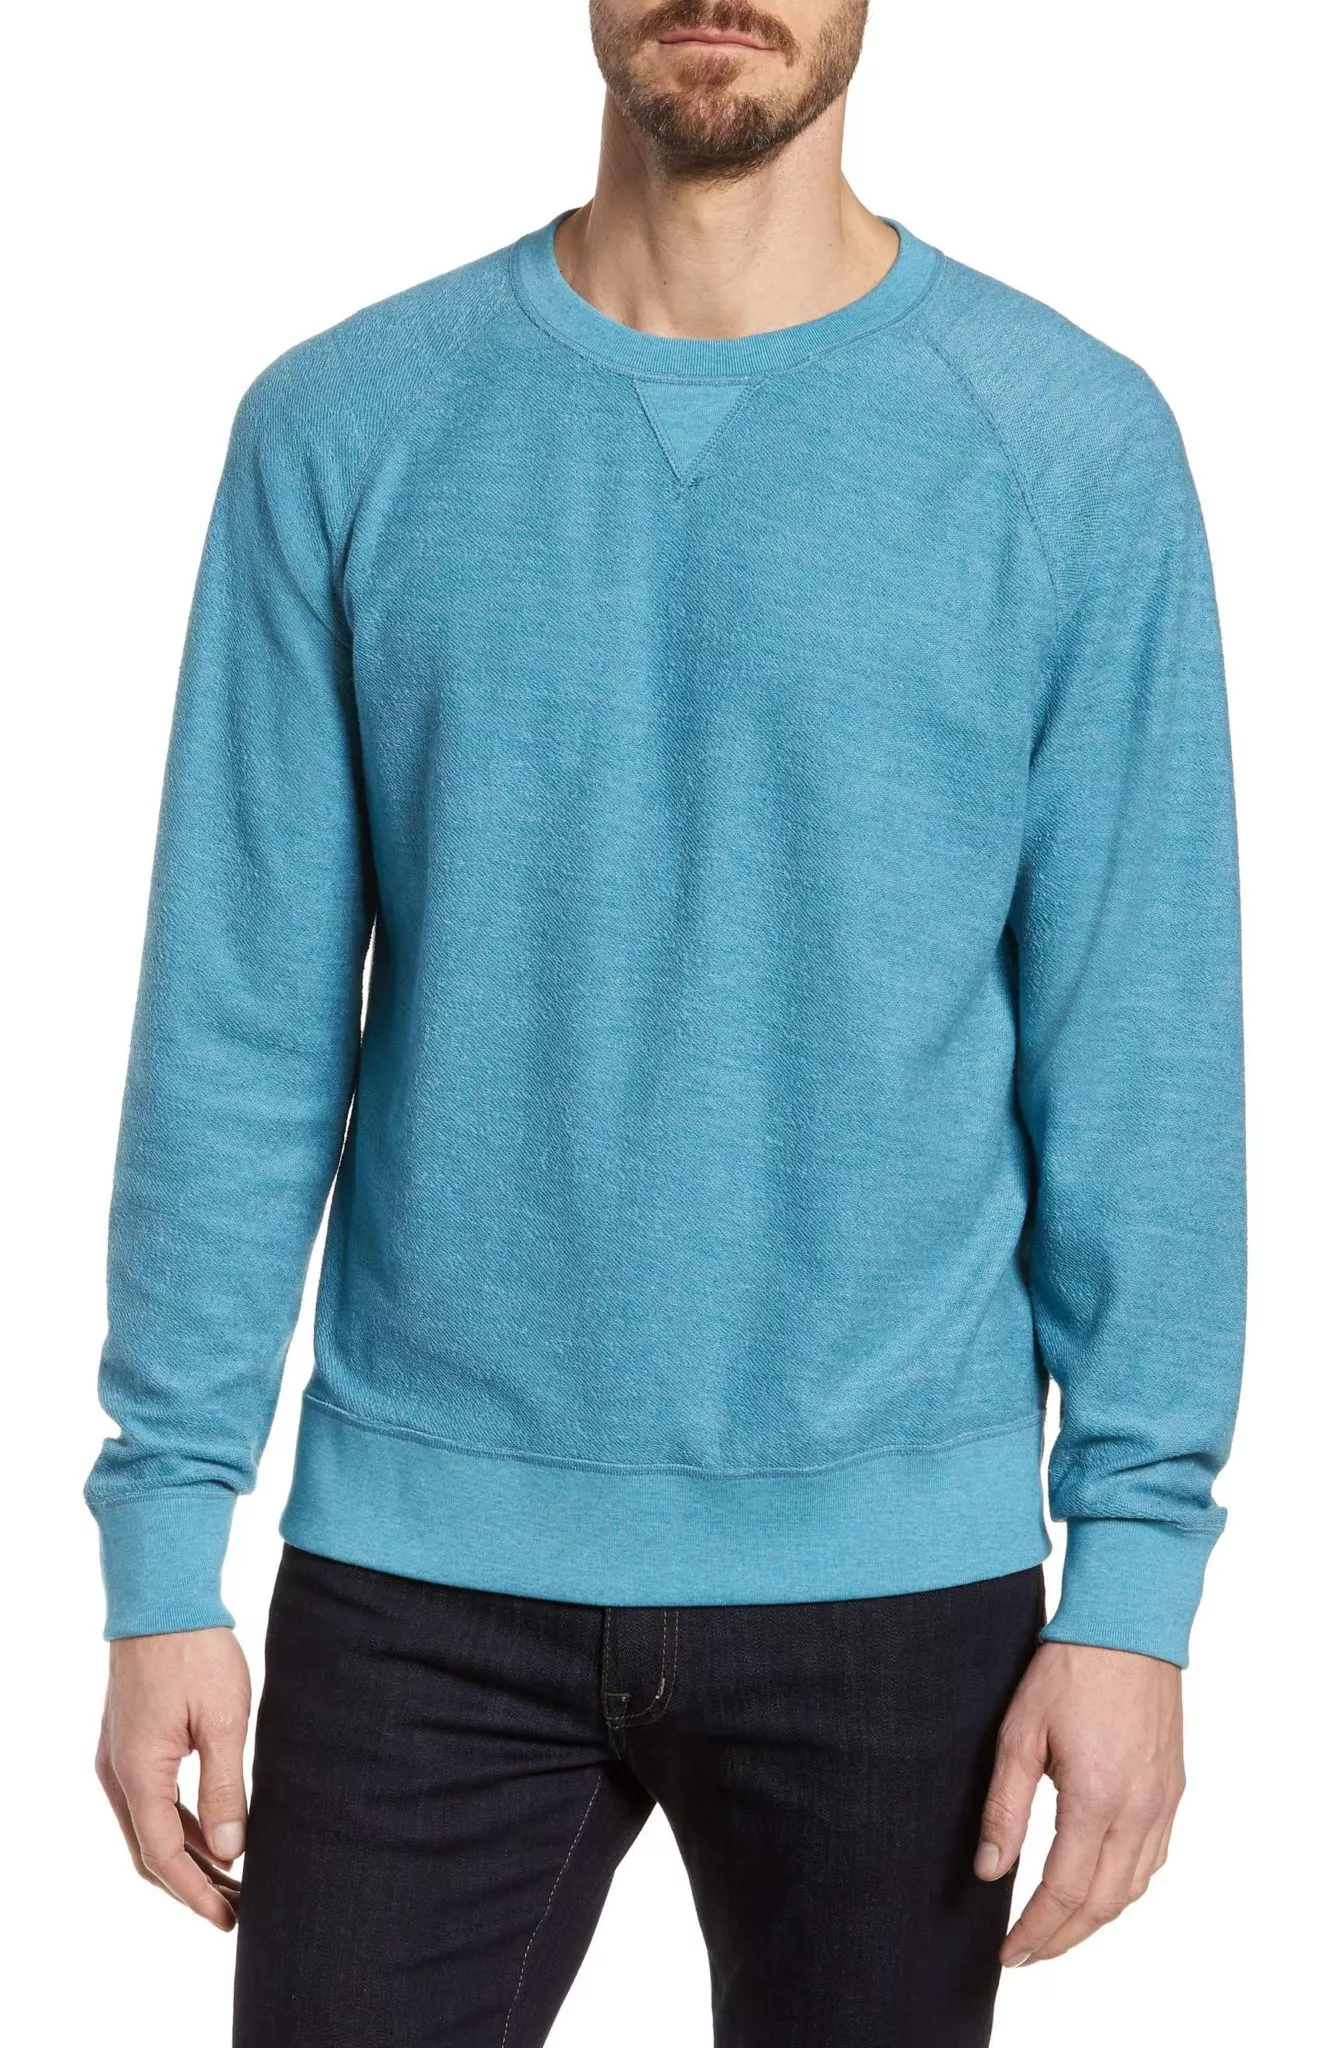 Best Sweatshirts for Men 2018: Blue Crewneck Sweatshirt 2024